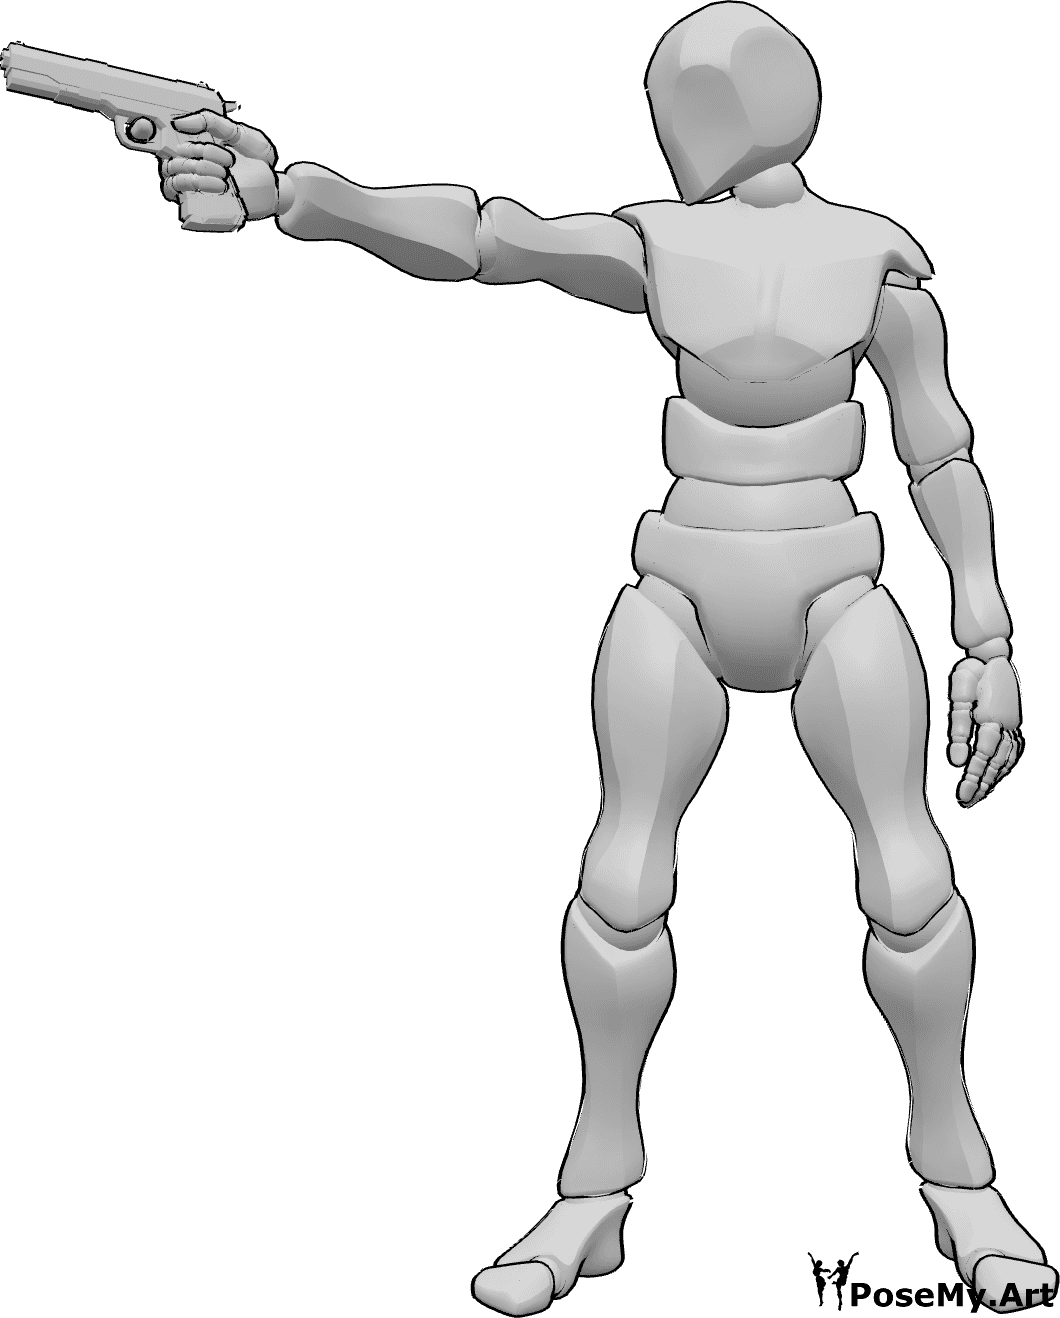 Posen-Referenz- Männliche Zielpistole in Pose - Mann steht, hält eine Pistole in der rechten Hand und zielt nach rechts